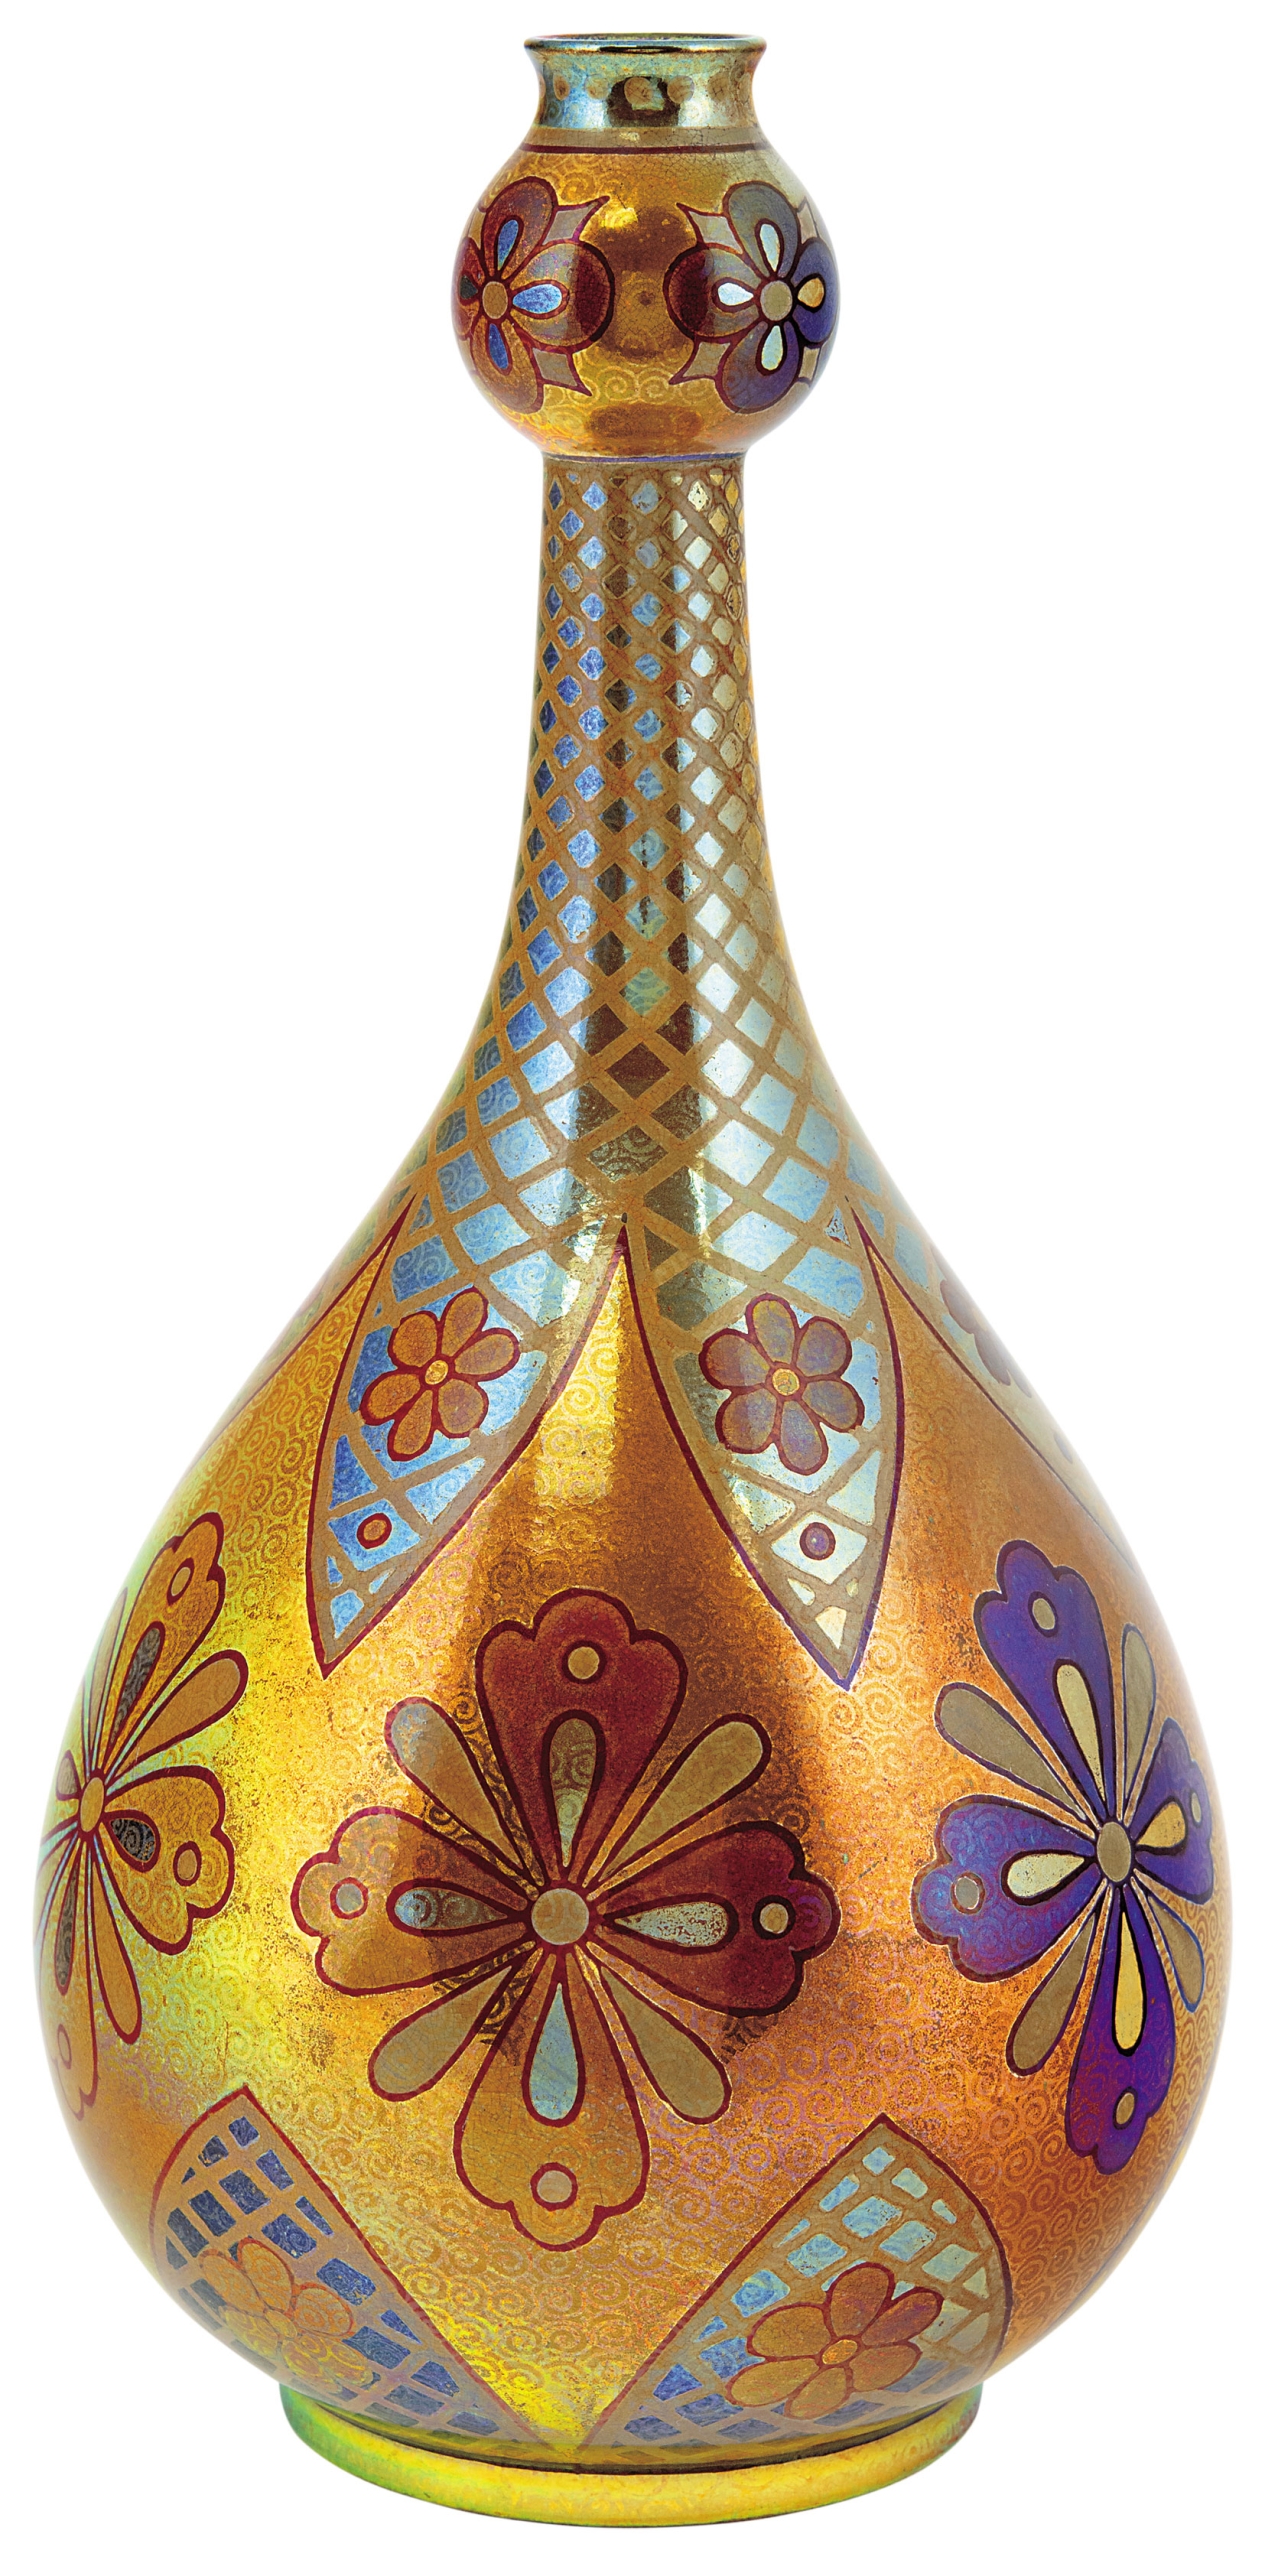 Zsolnay Damascene Vase, around 1896